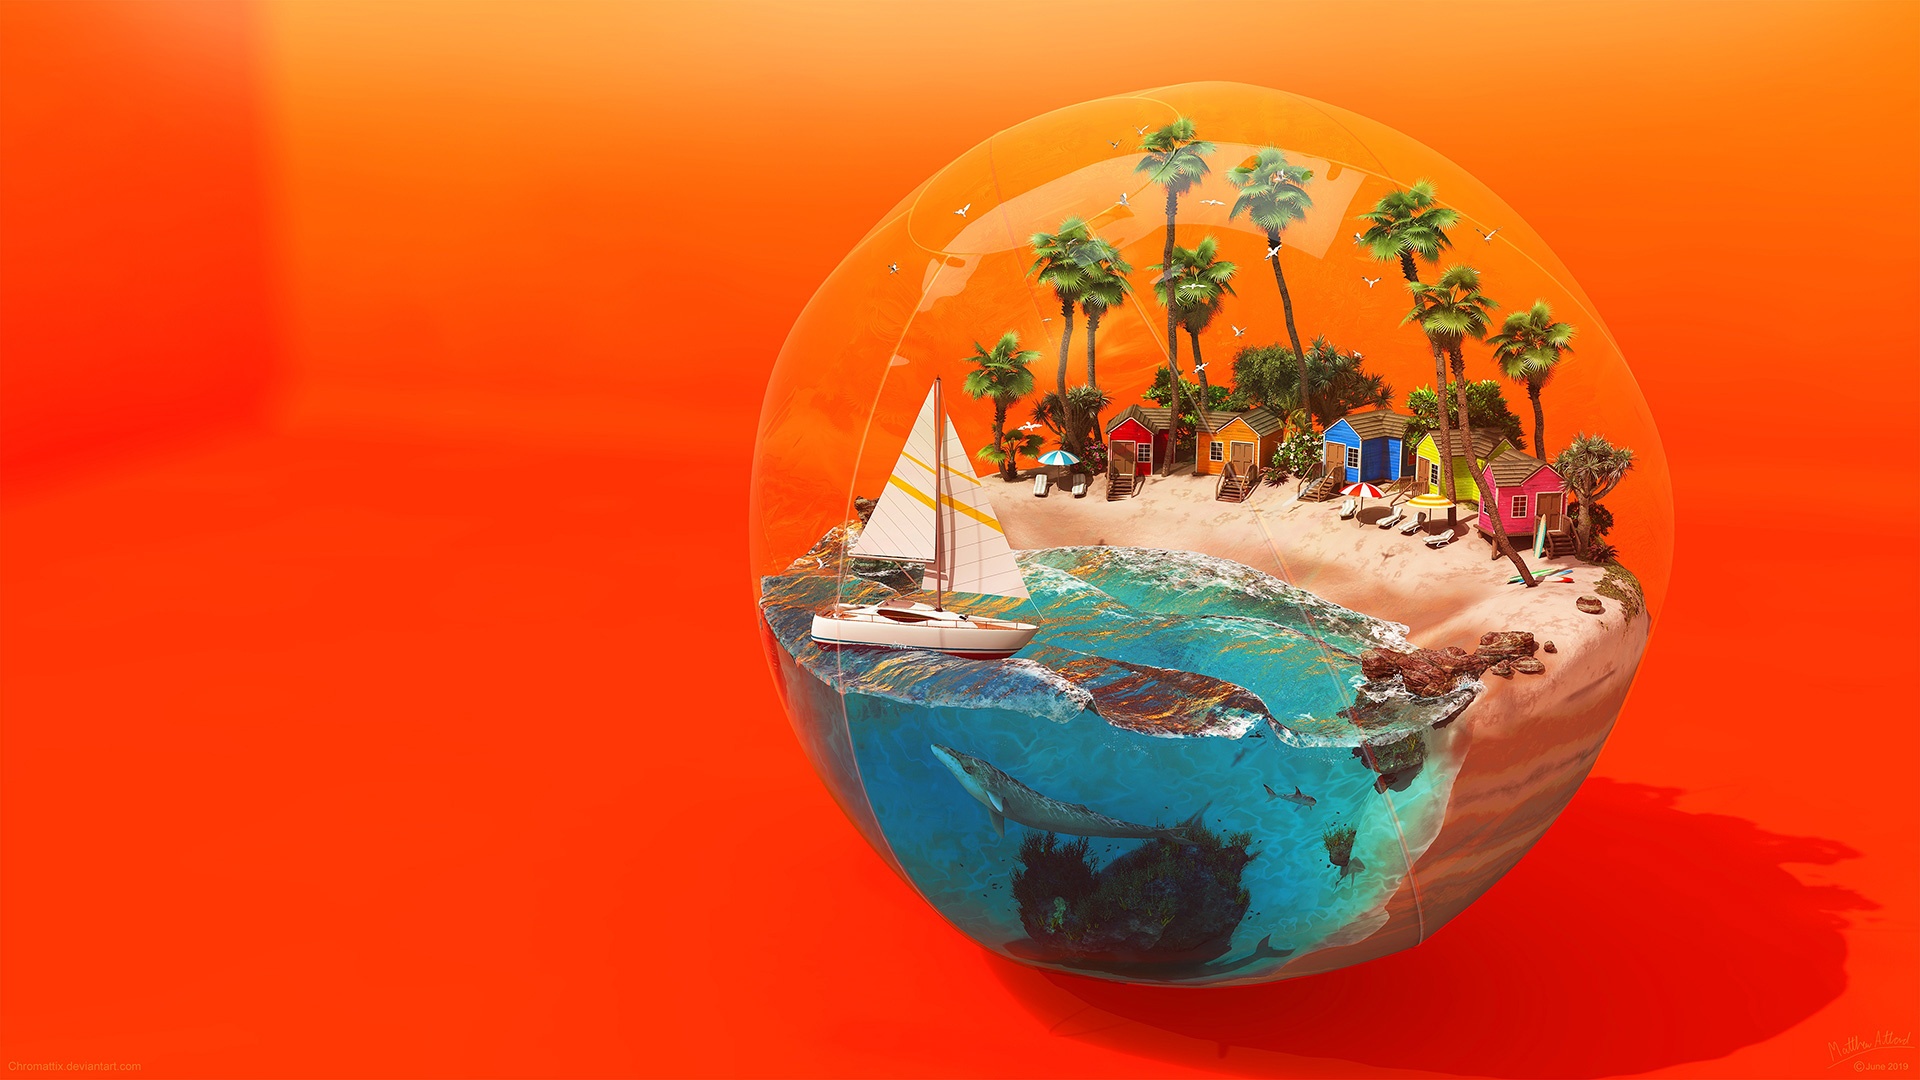 Beach Sea Fish Trees Sailing Ship Sphere Artwork Digital Art Orange Beach Ball 1920x1080